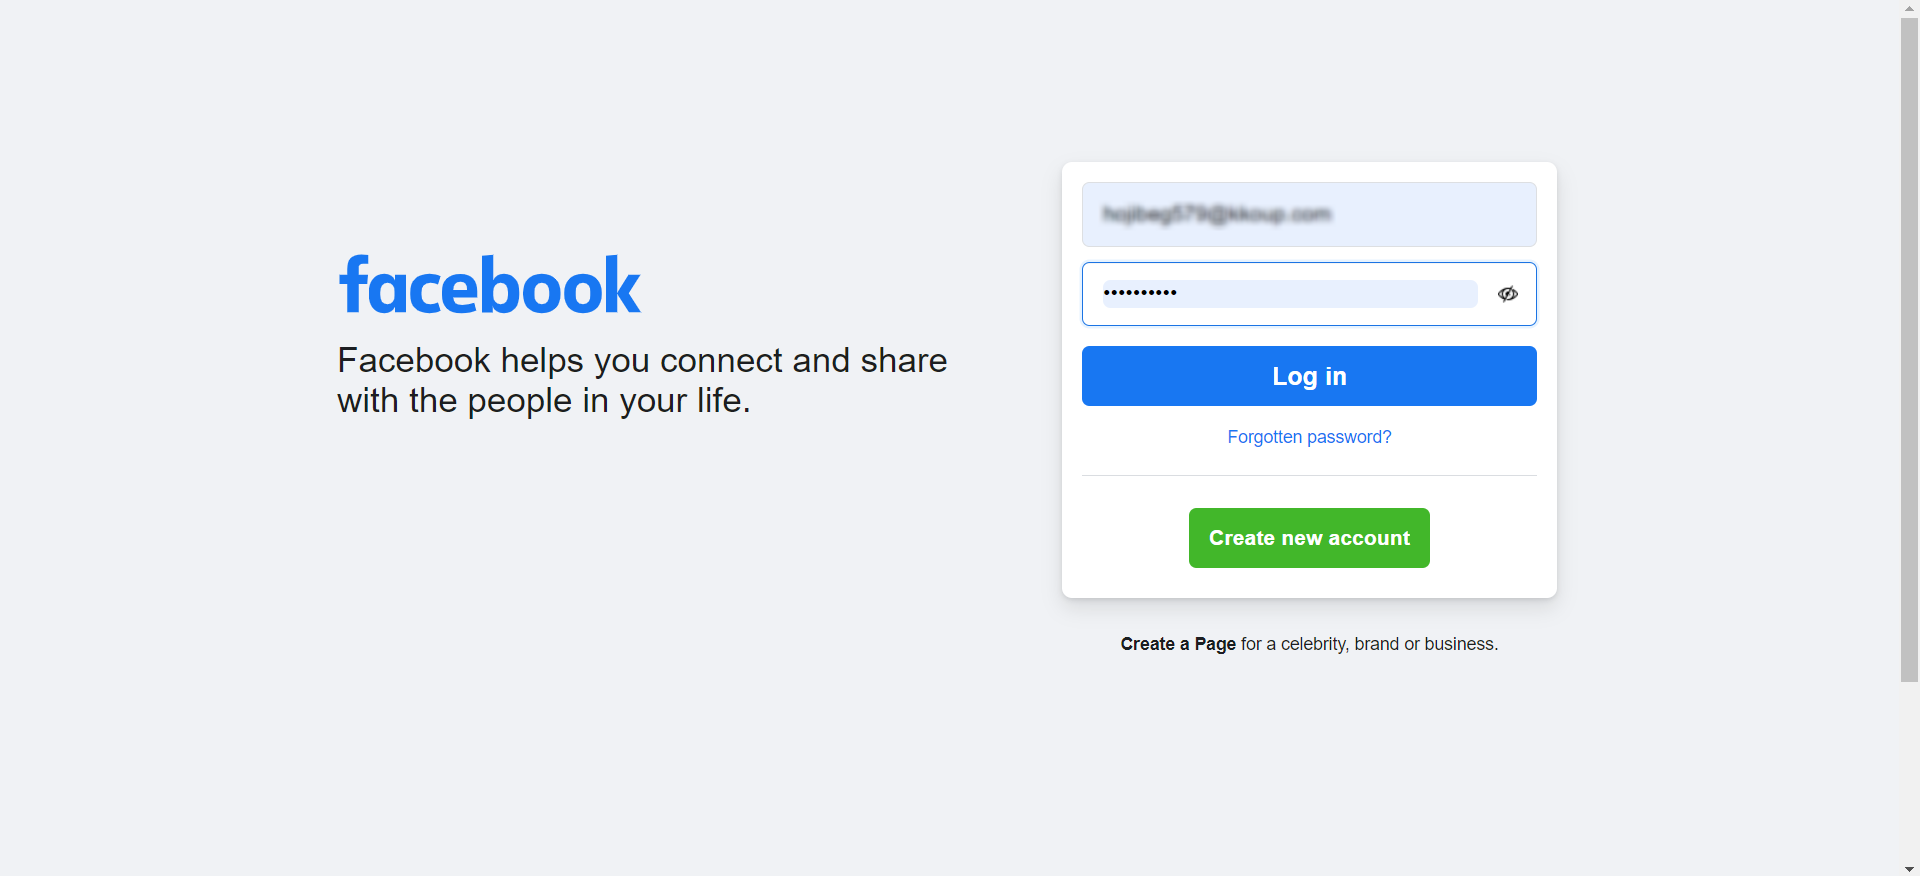 miniOrange Identity Platform Admin Handbook: Facebook login